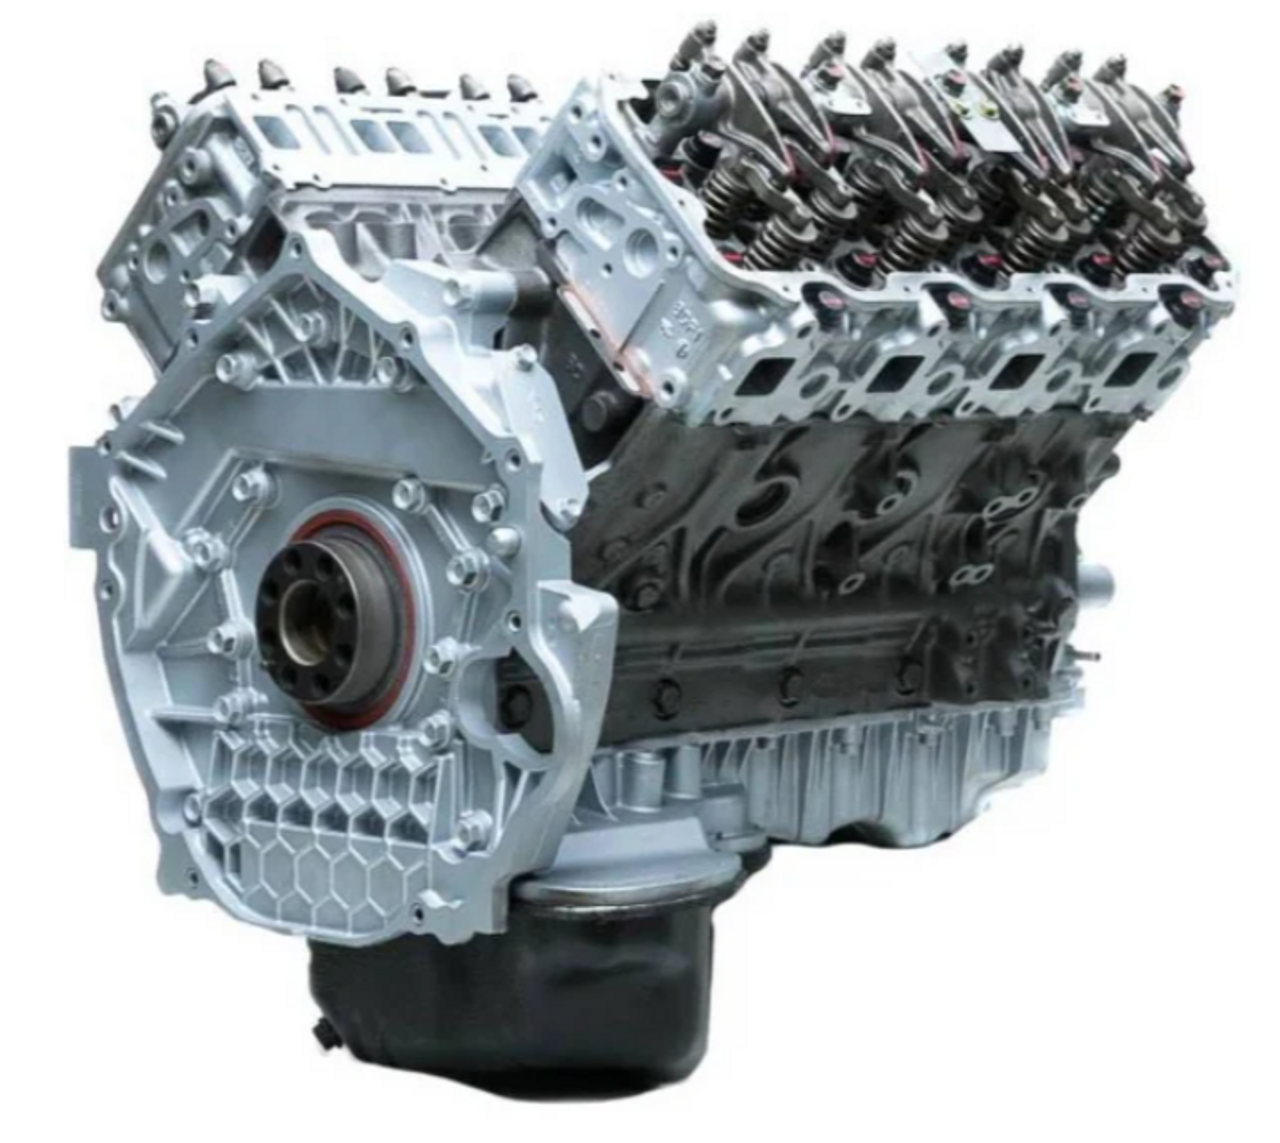 DFC Diesel 6.7 Cummins Engine